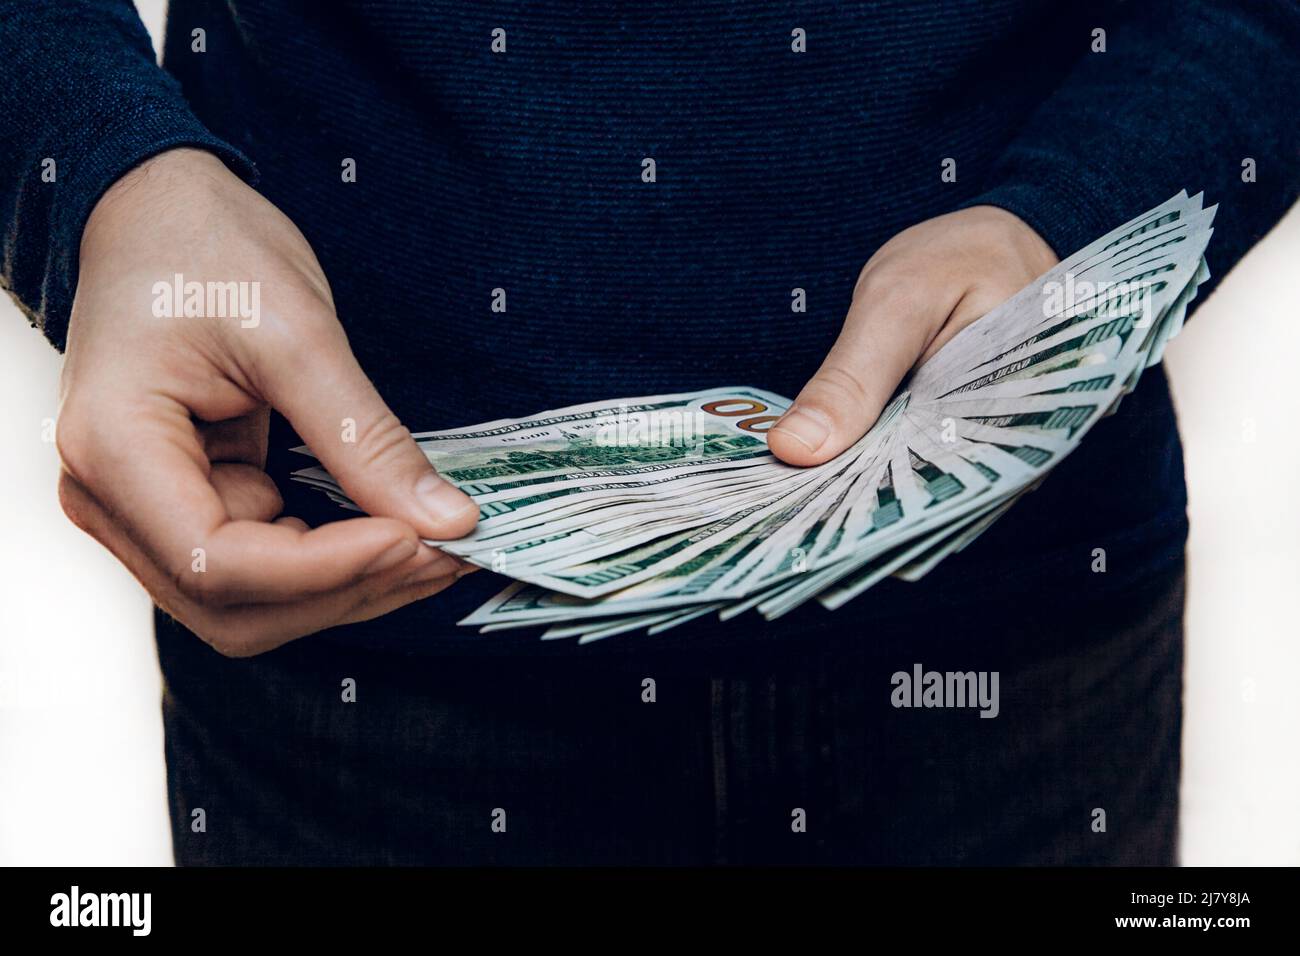 Un homme tient un fan de 100 billets de dollars dans ses mains et les compte. Banque D'Images